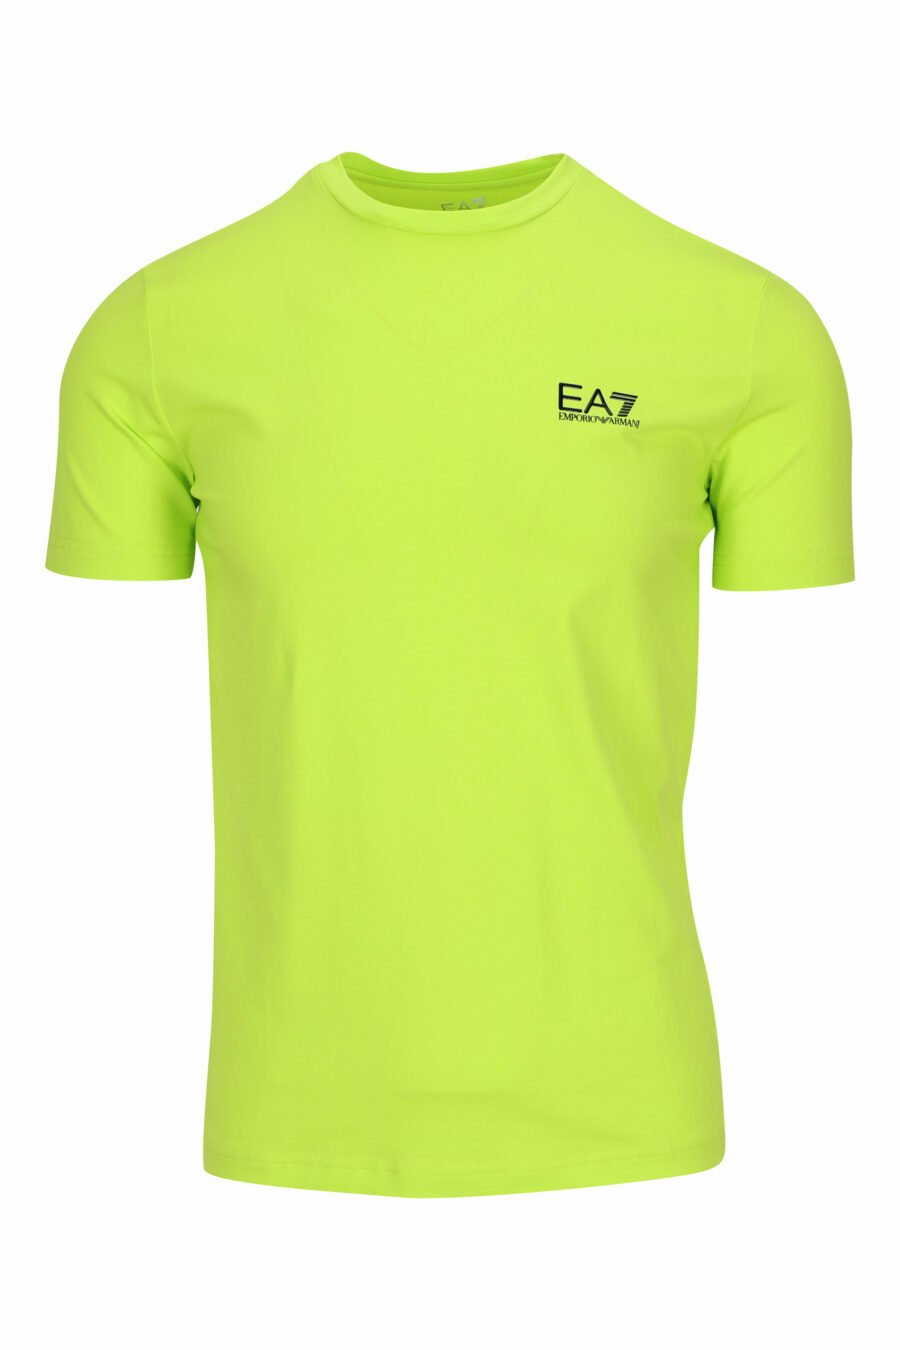 T-shirt verde-limão com minilogo "lux identity" em borracha - 8058947458301